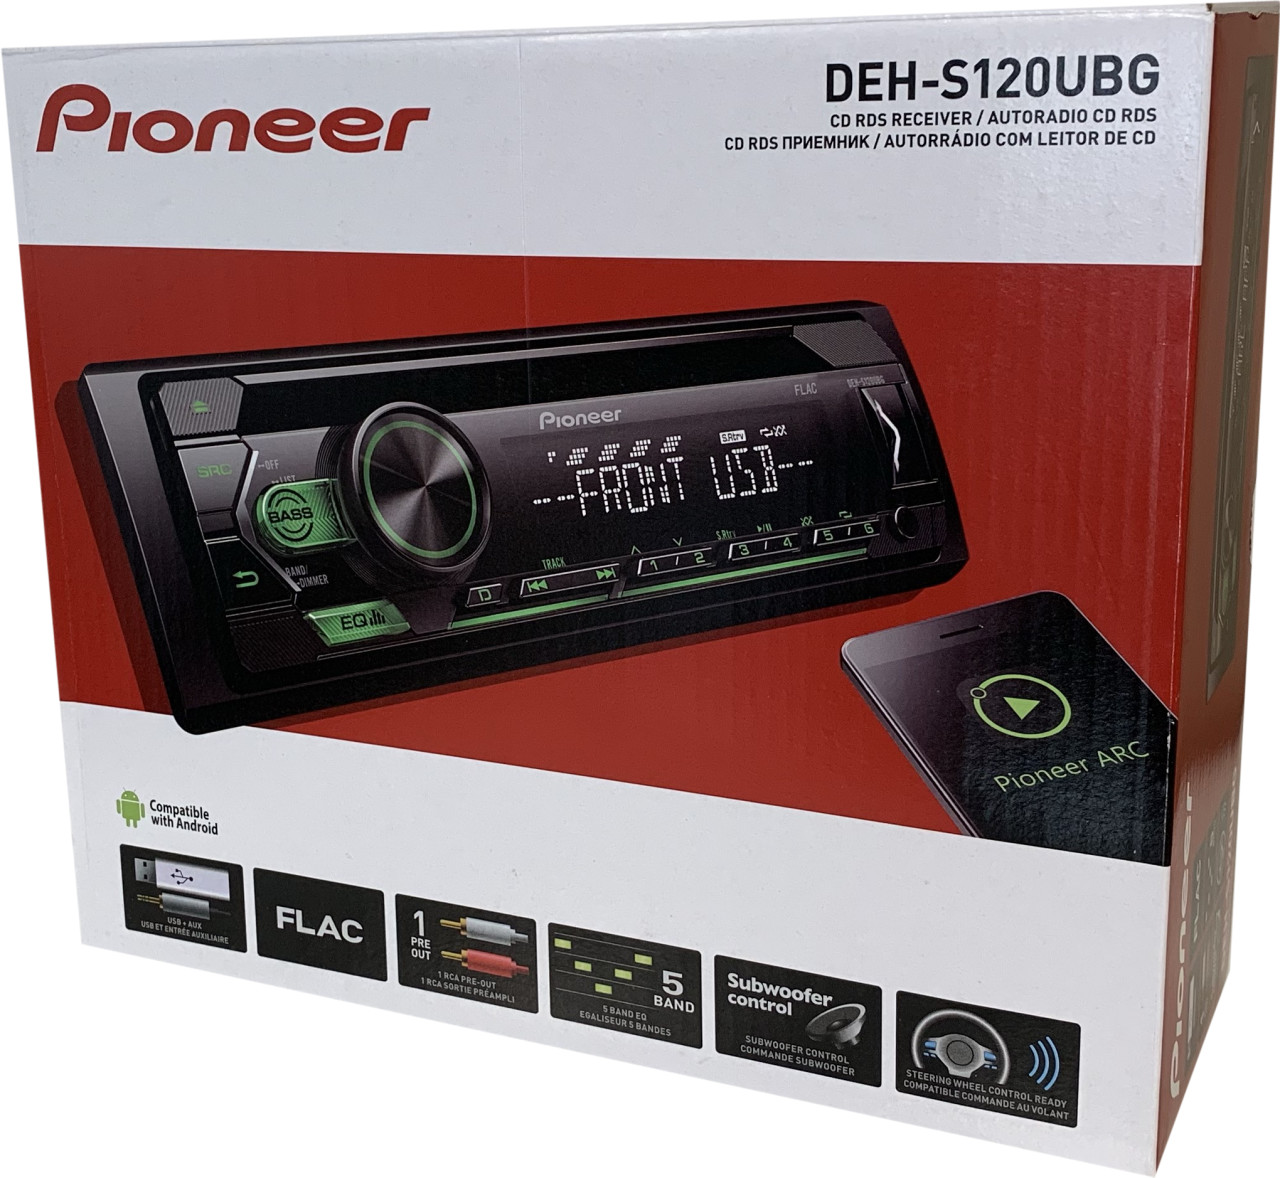 Oferta Autoradio Pioneer DEH-S120UBG con iluminación verde